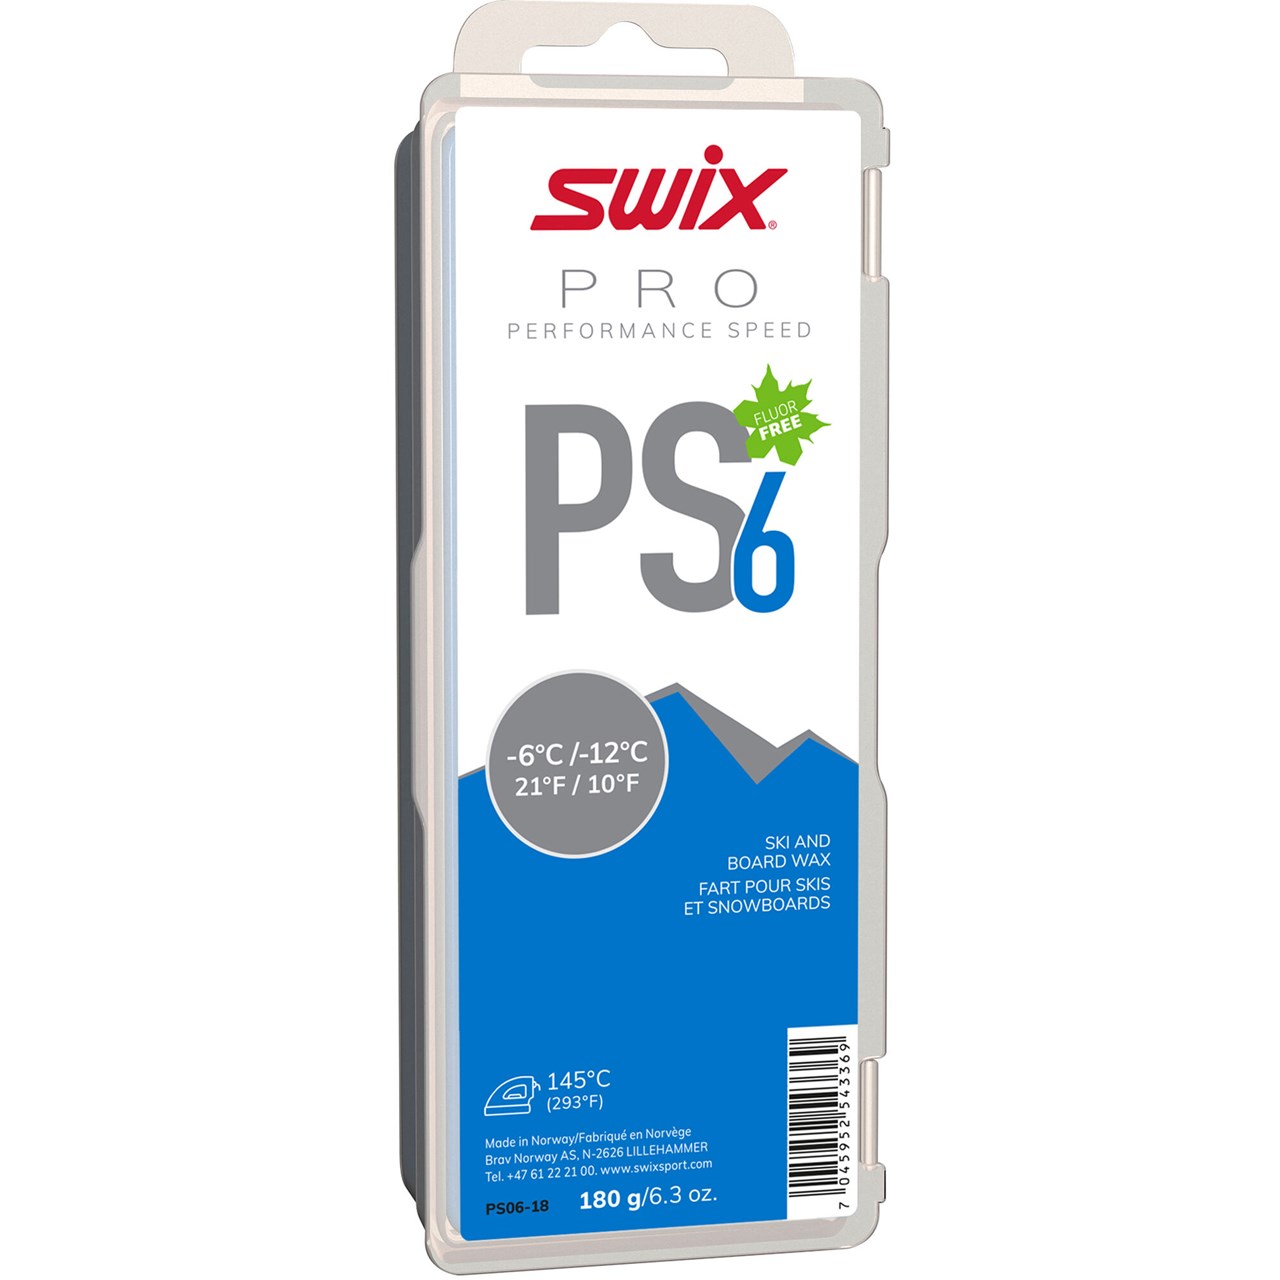 Swix Ps6 -6ºc/-12ºc 180g